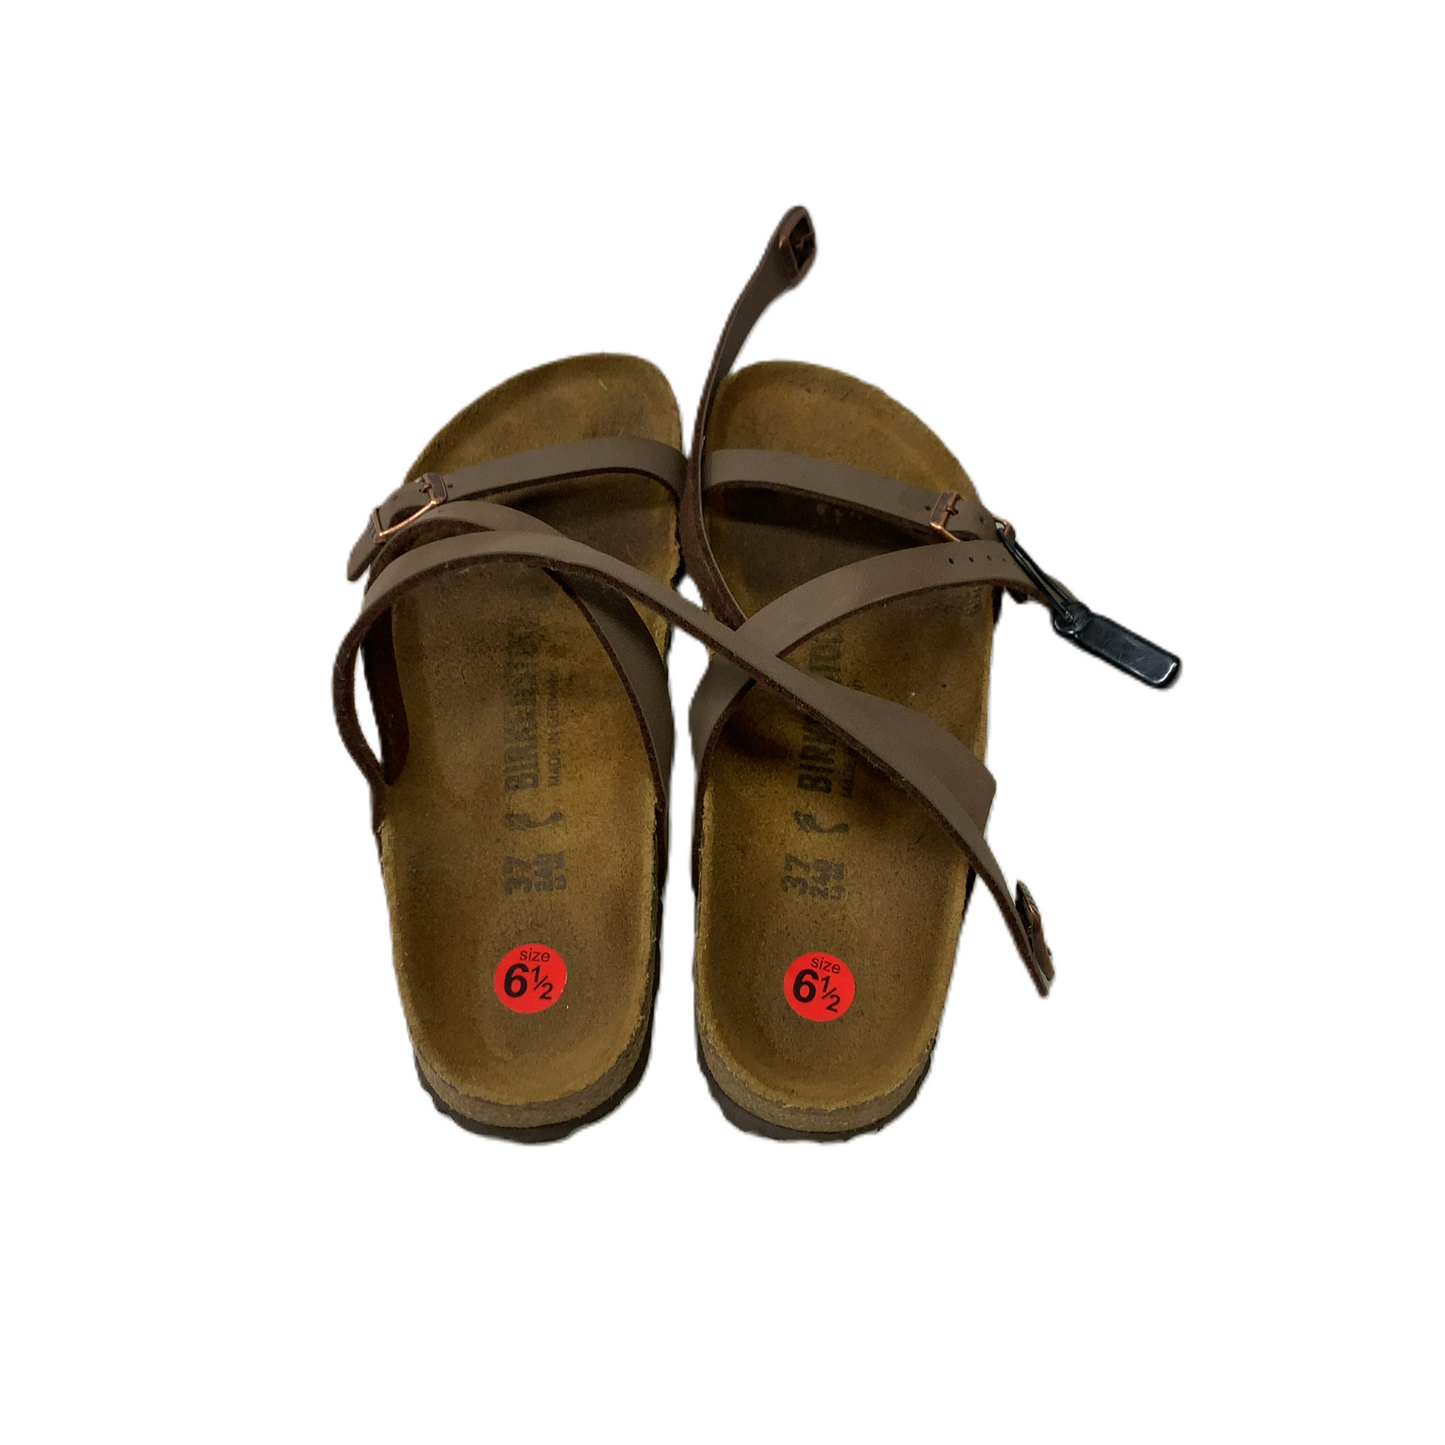 Sandals Heels Wedge By Birkenstock  Size: 6.5